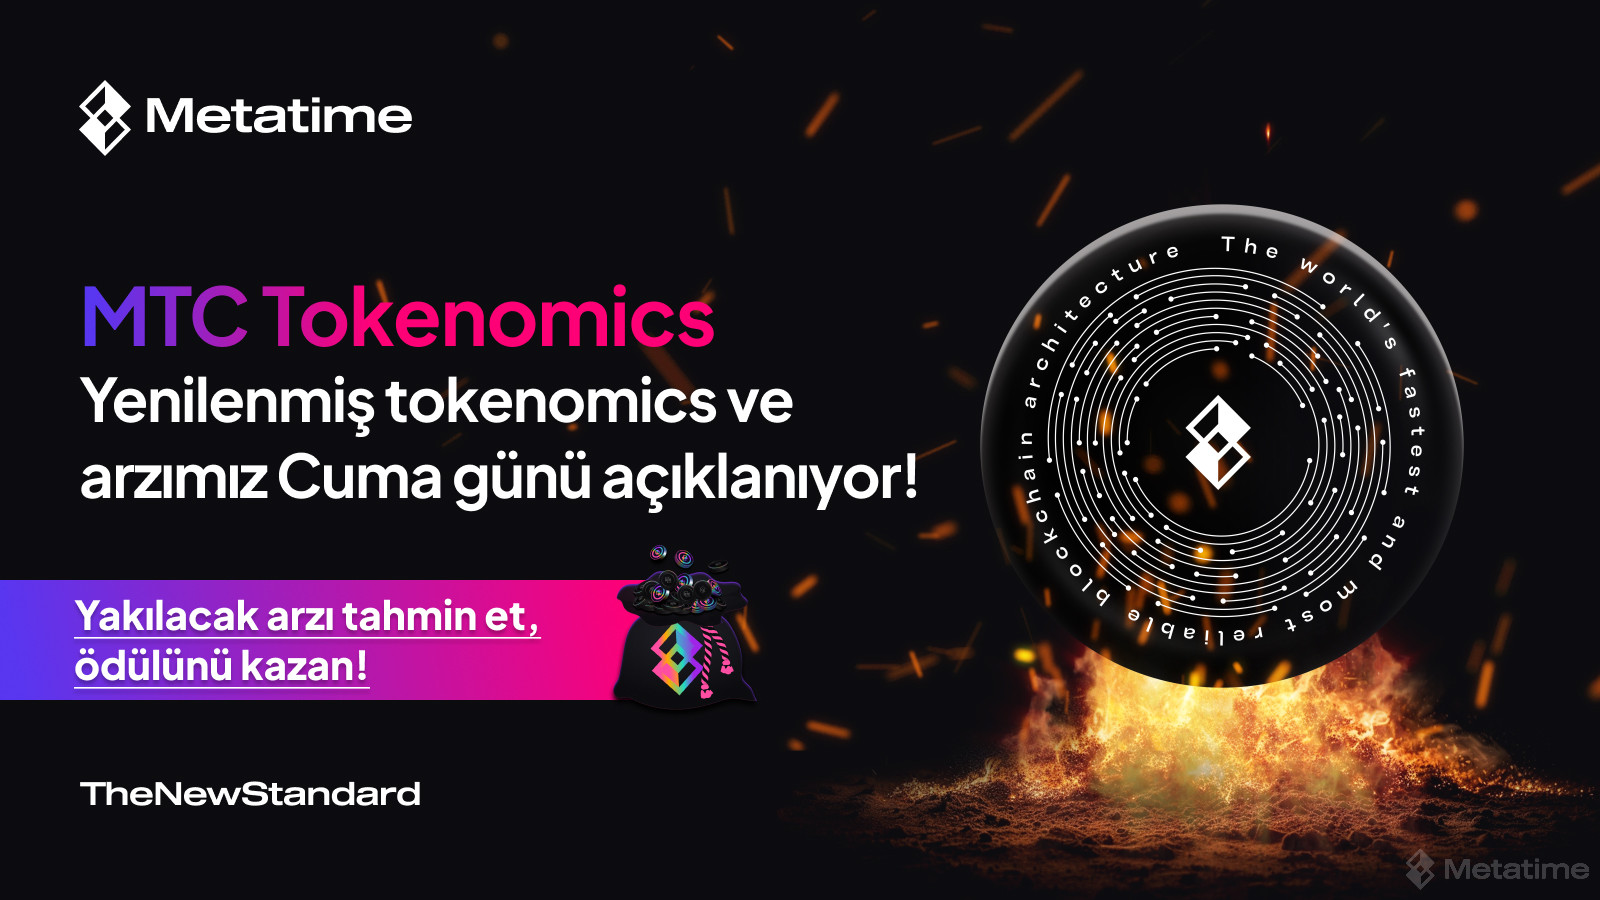 MTC Tokenomics Cuma Günü Açıklanıyor!